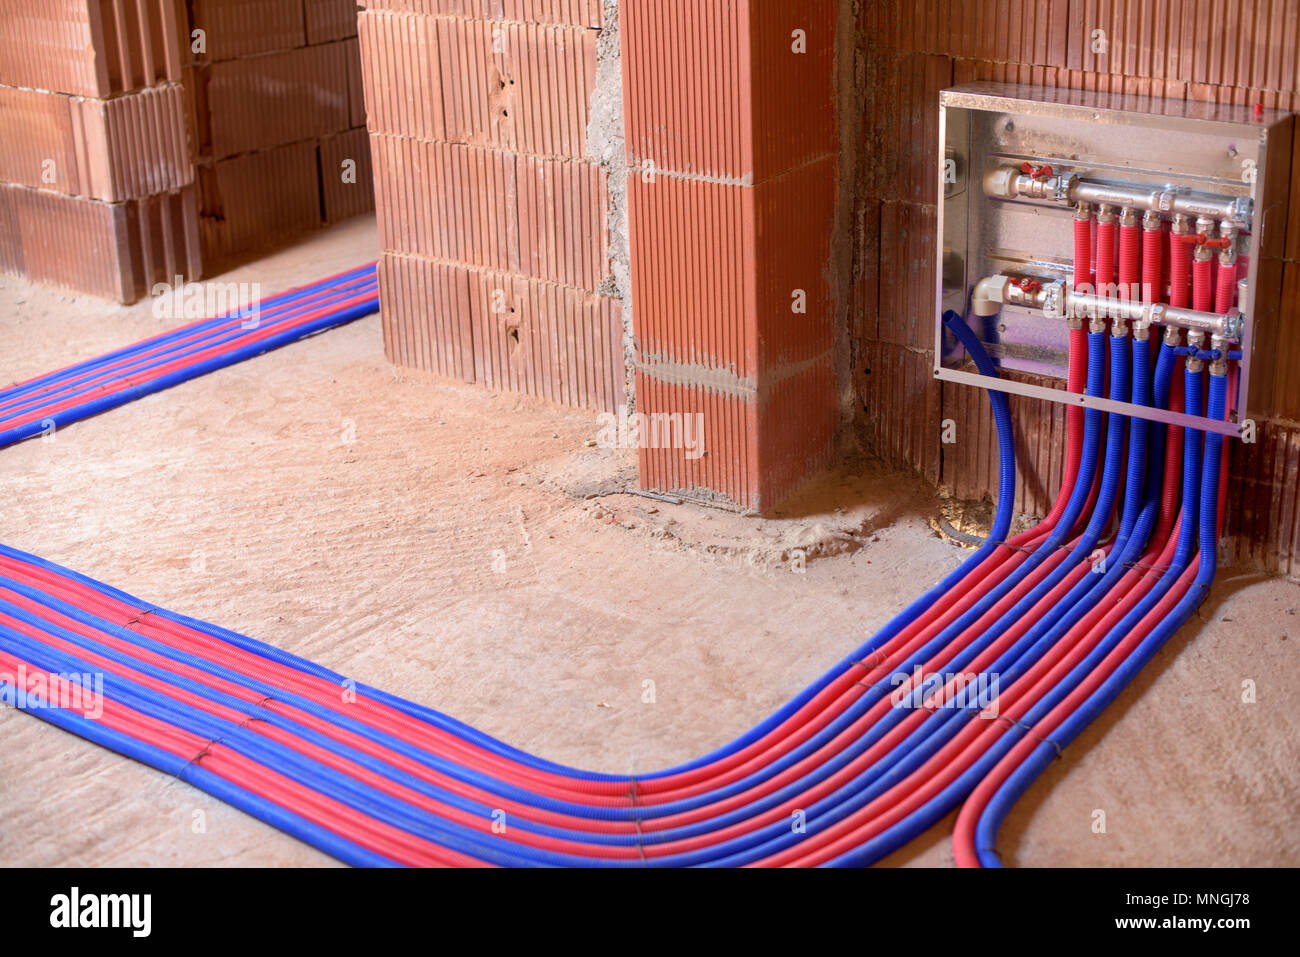 Les tuyaux de plancher en deux couleurs, rouge et bleu, et le panneau de commande. Banque D'Images